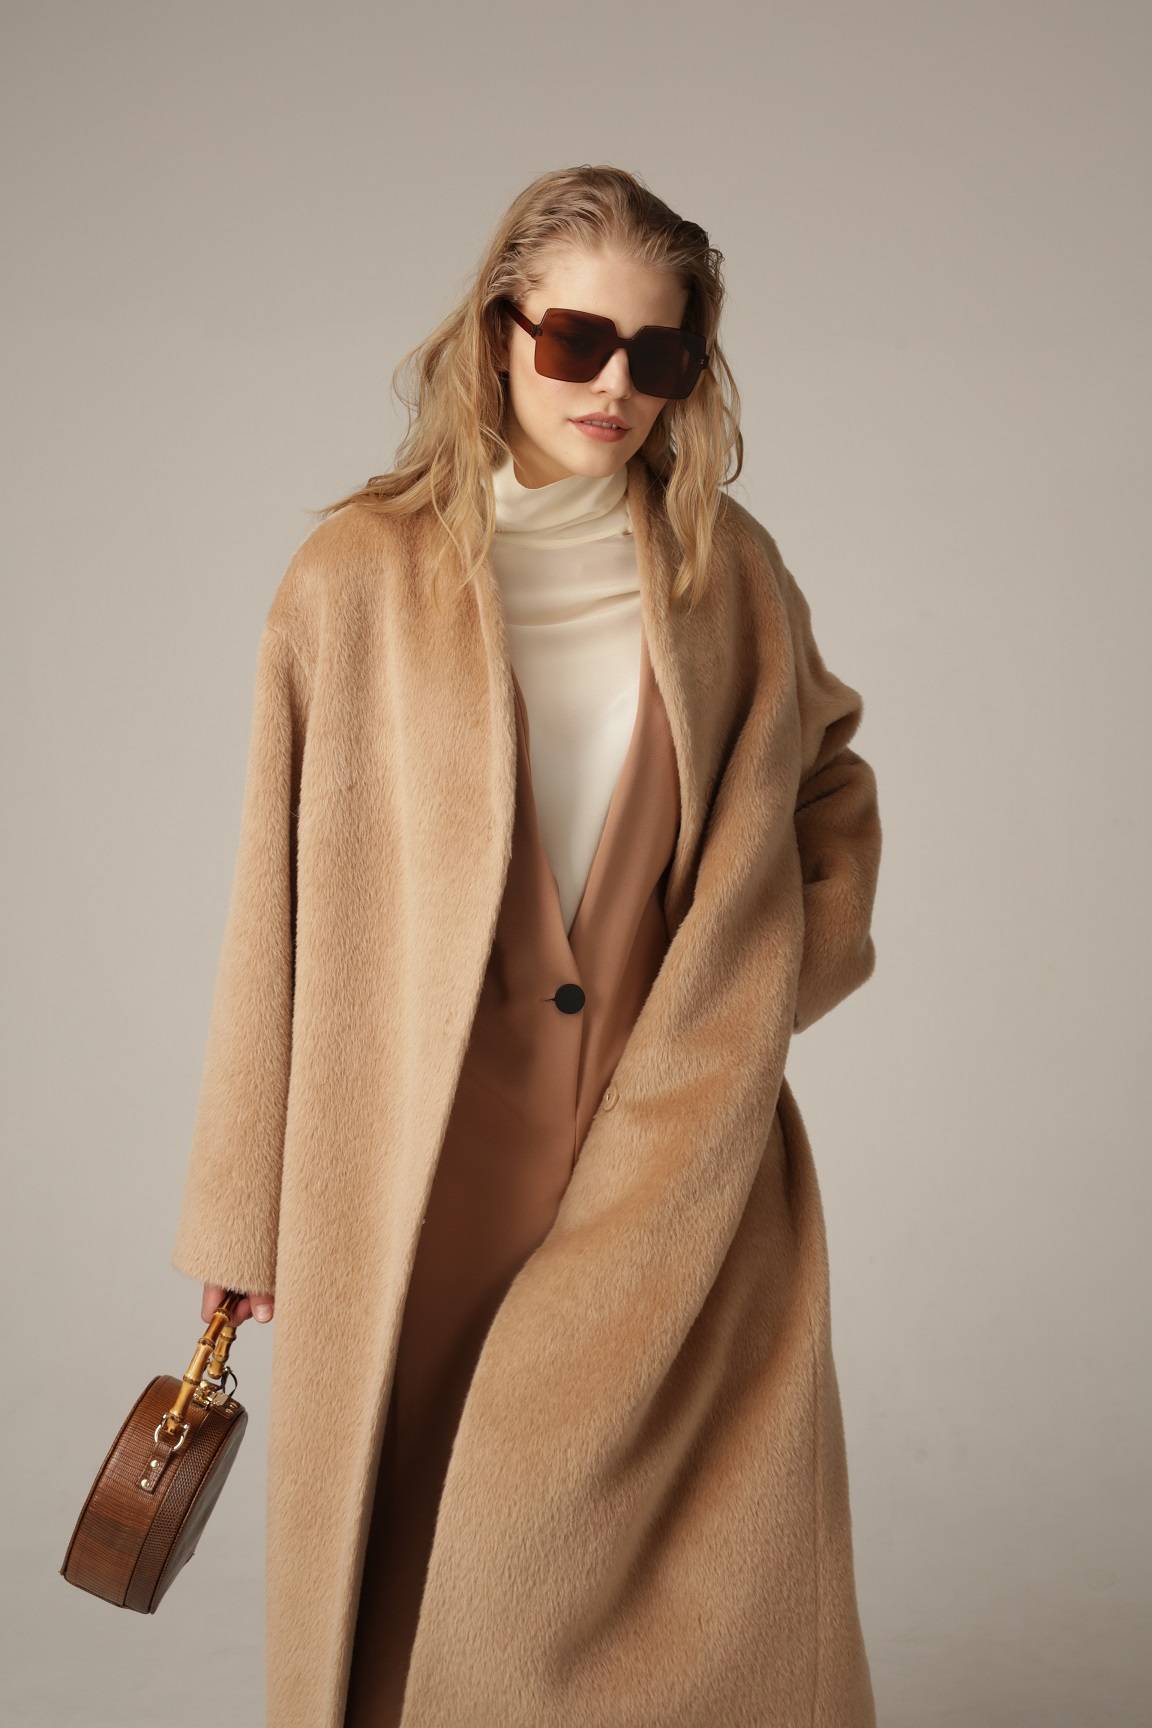 Пальто из альпаки – модная верхняя одежда для демисезонного периода